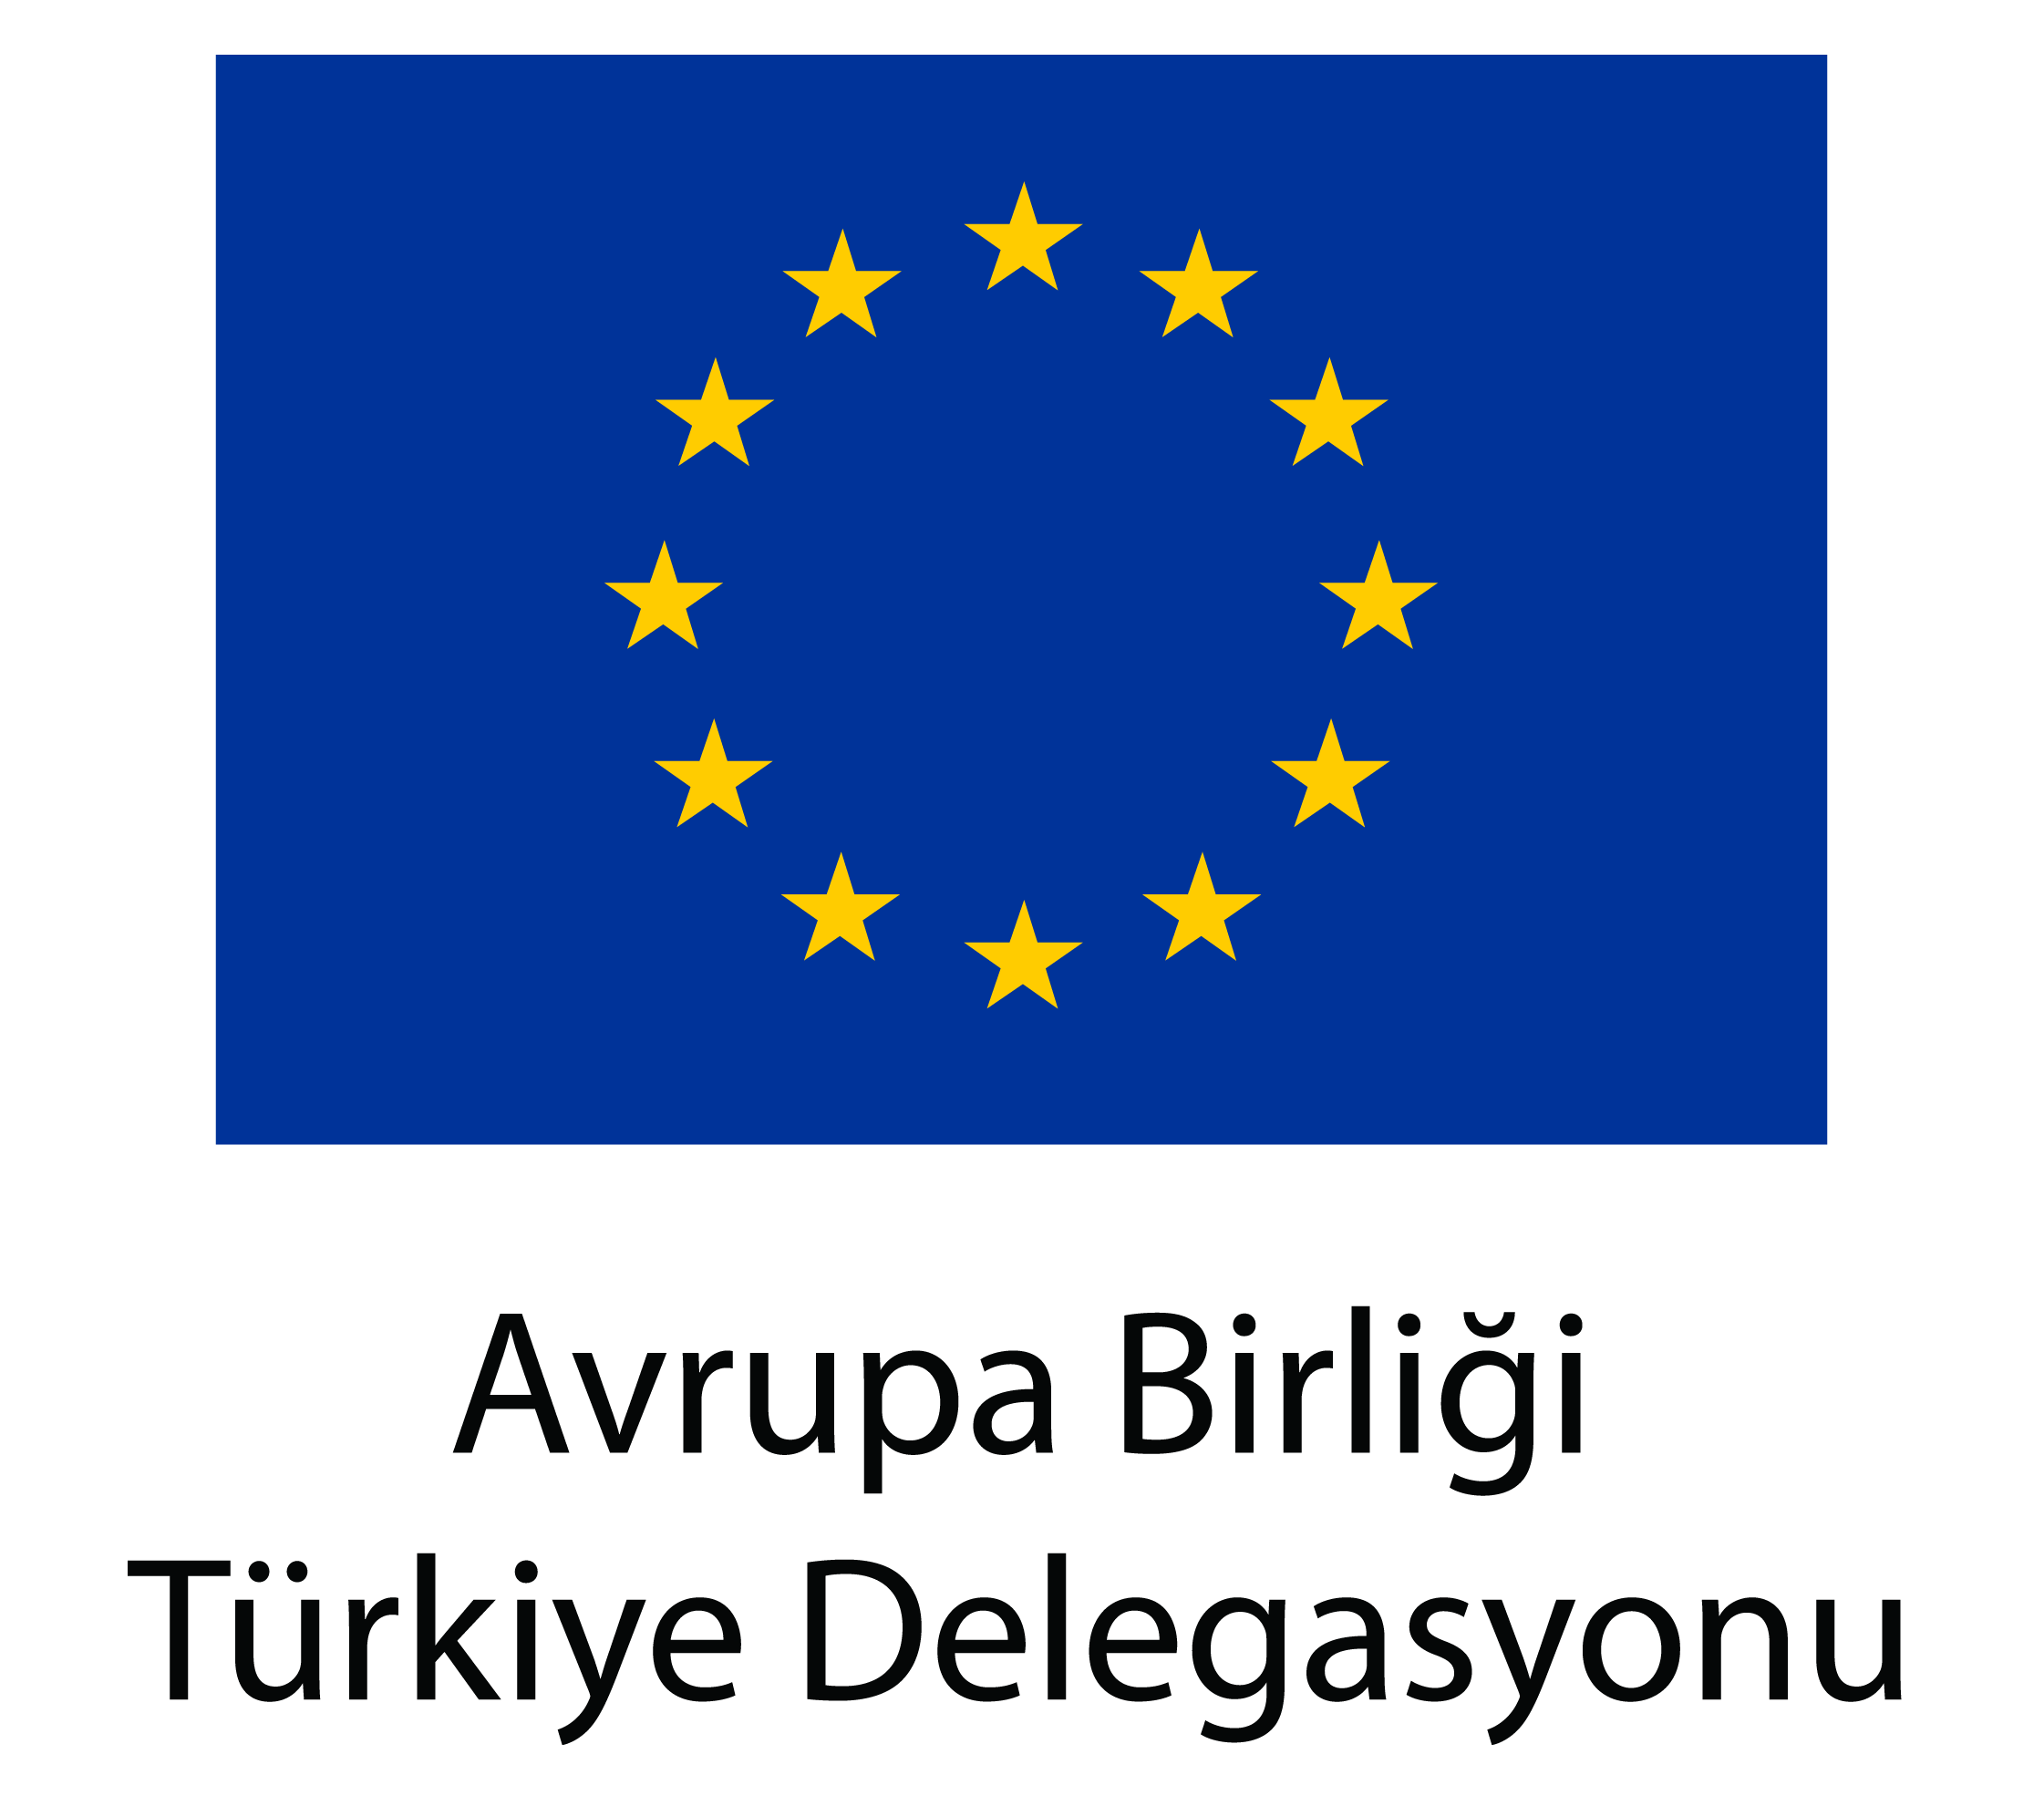 Konferans Türk yetkili merciileri ile birlikte düzenlenecek